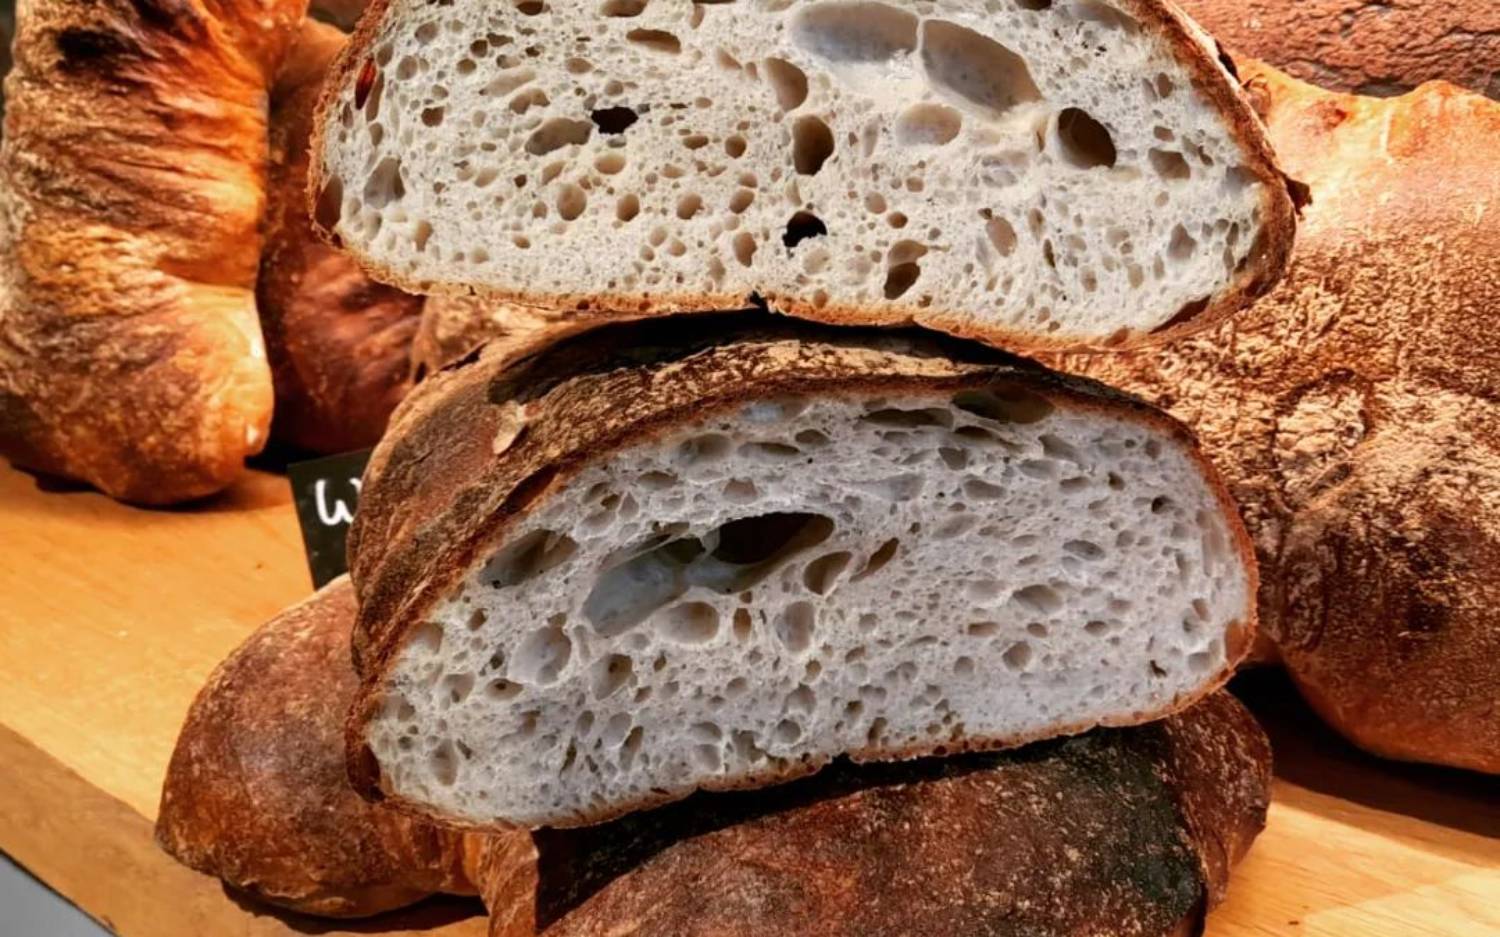 Die Eppendorfer können sich nun an täglich frisch gebackenem Brot von Sören Korte erfreuen / ©Sören Korte